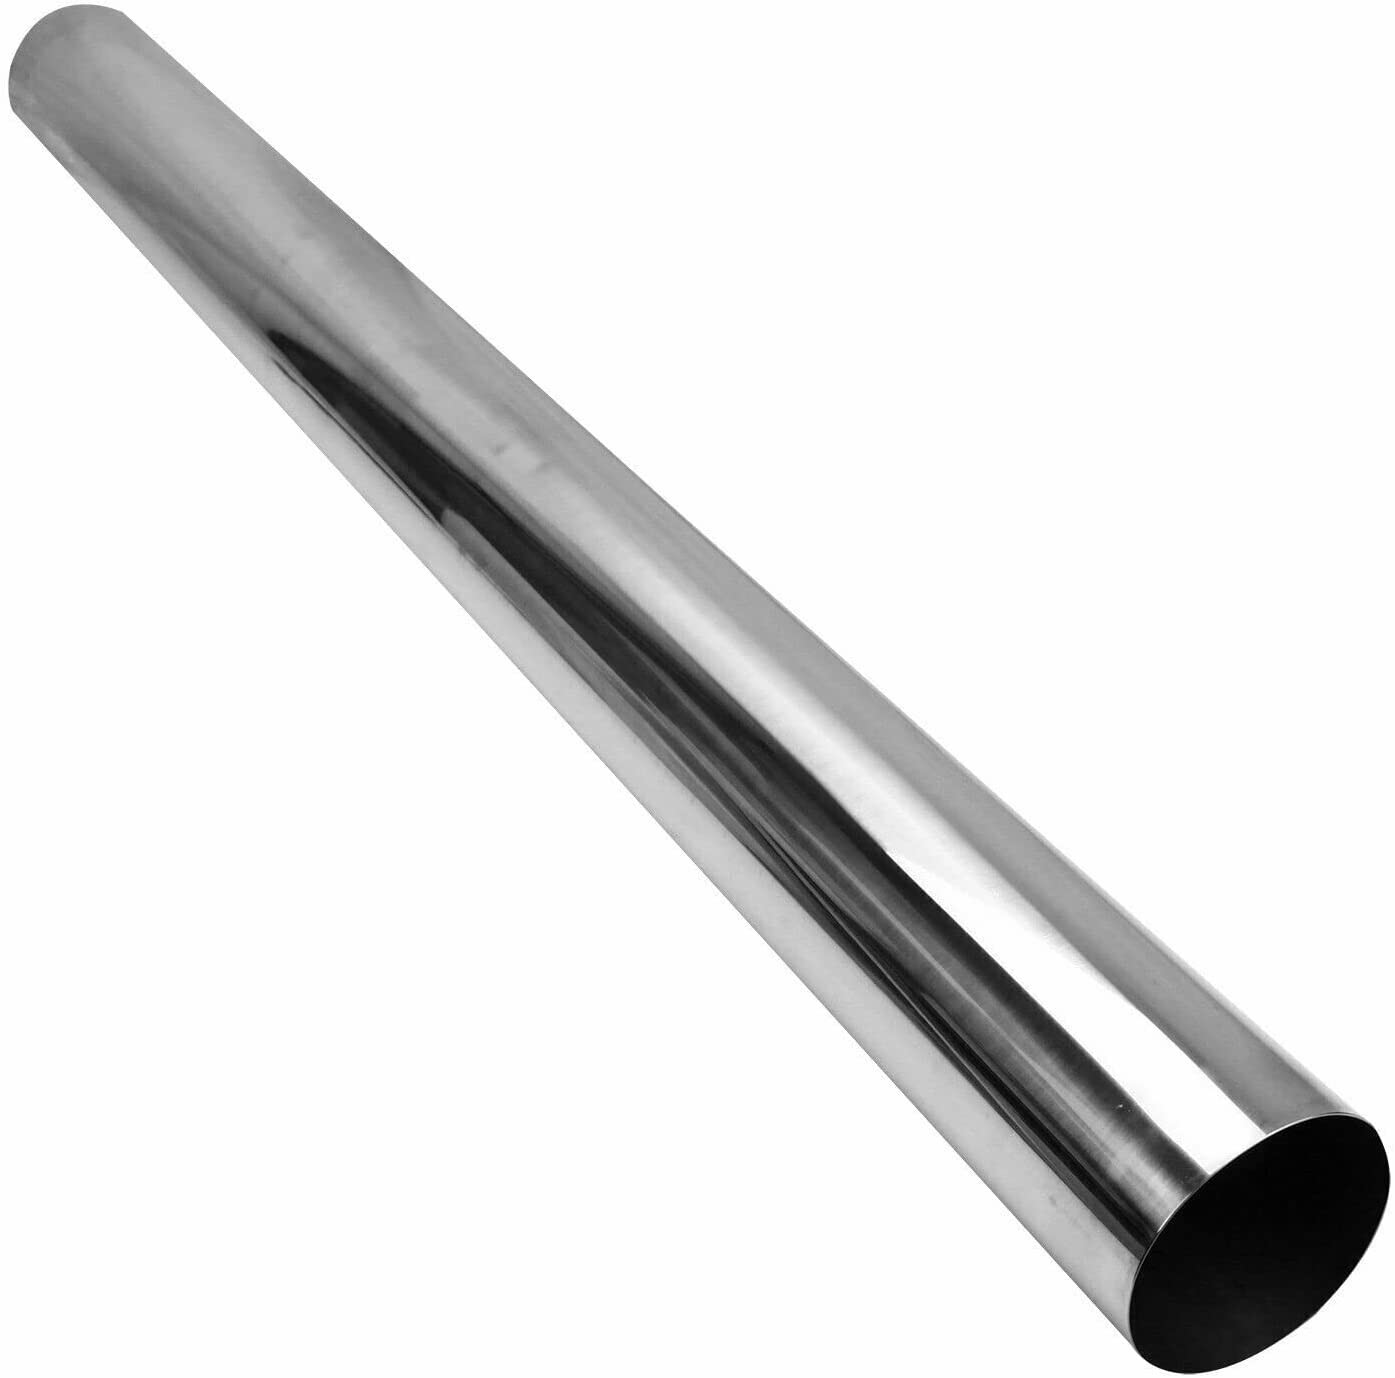 Tube Austenitic Chromium Nickel Alloy Steel Pipe For High Temperature Service